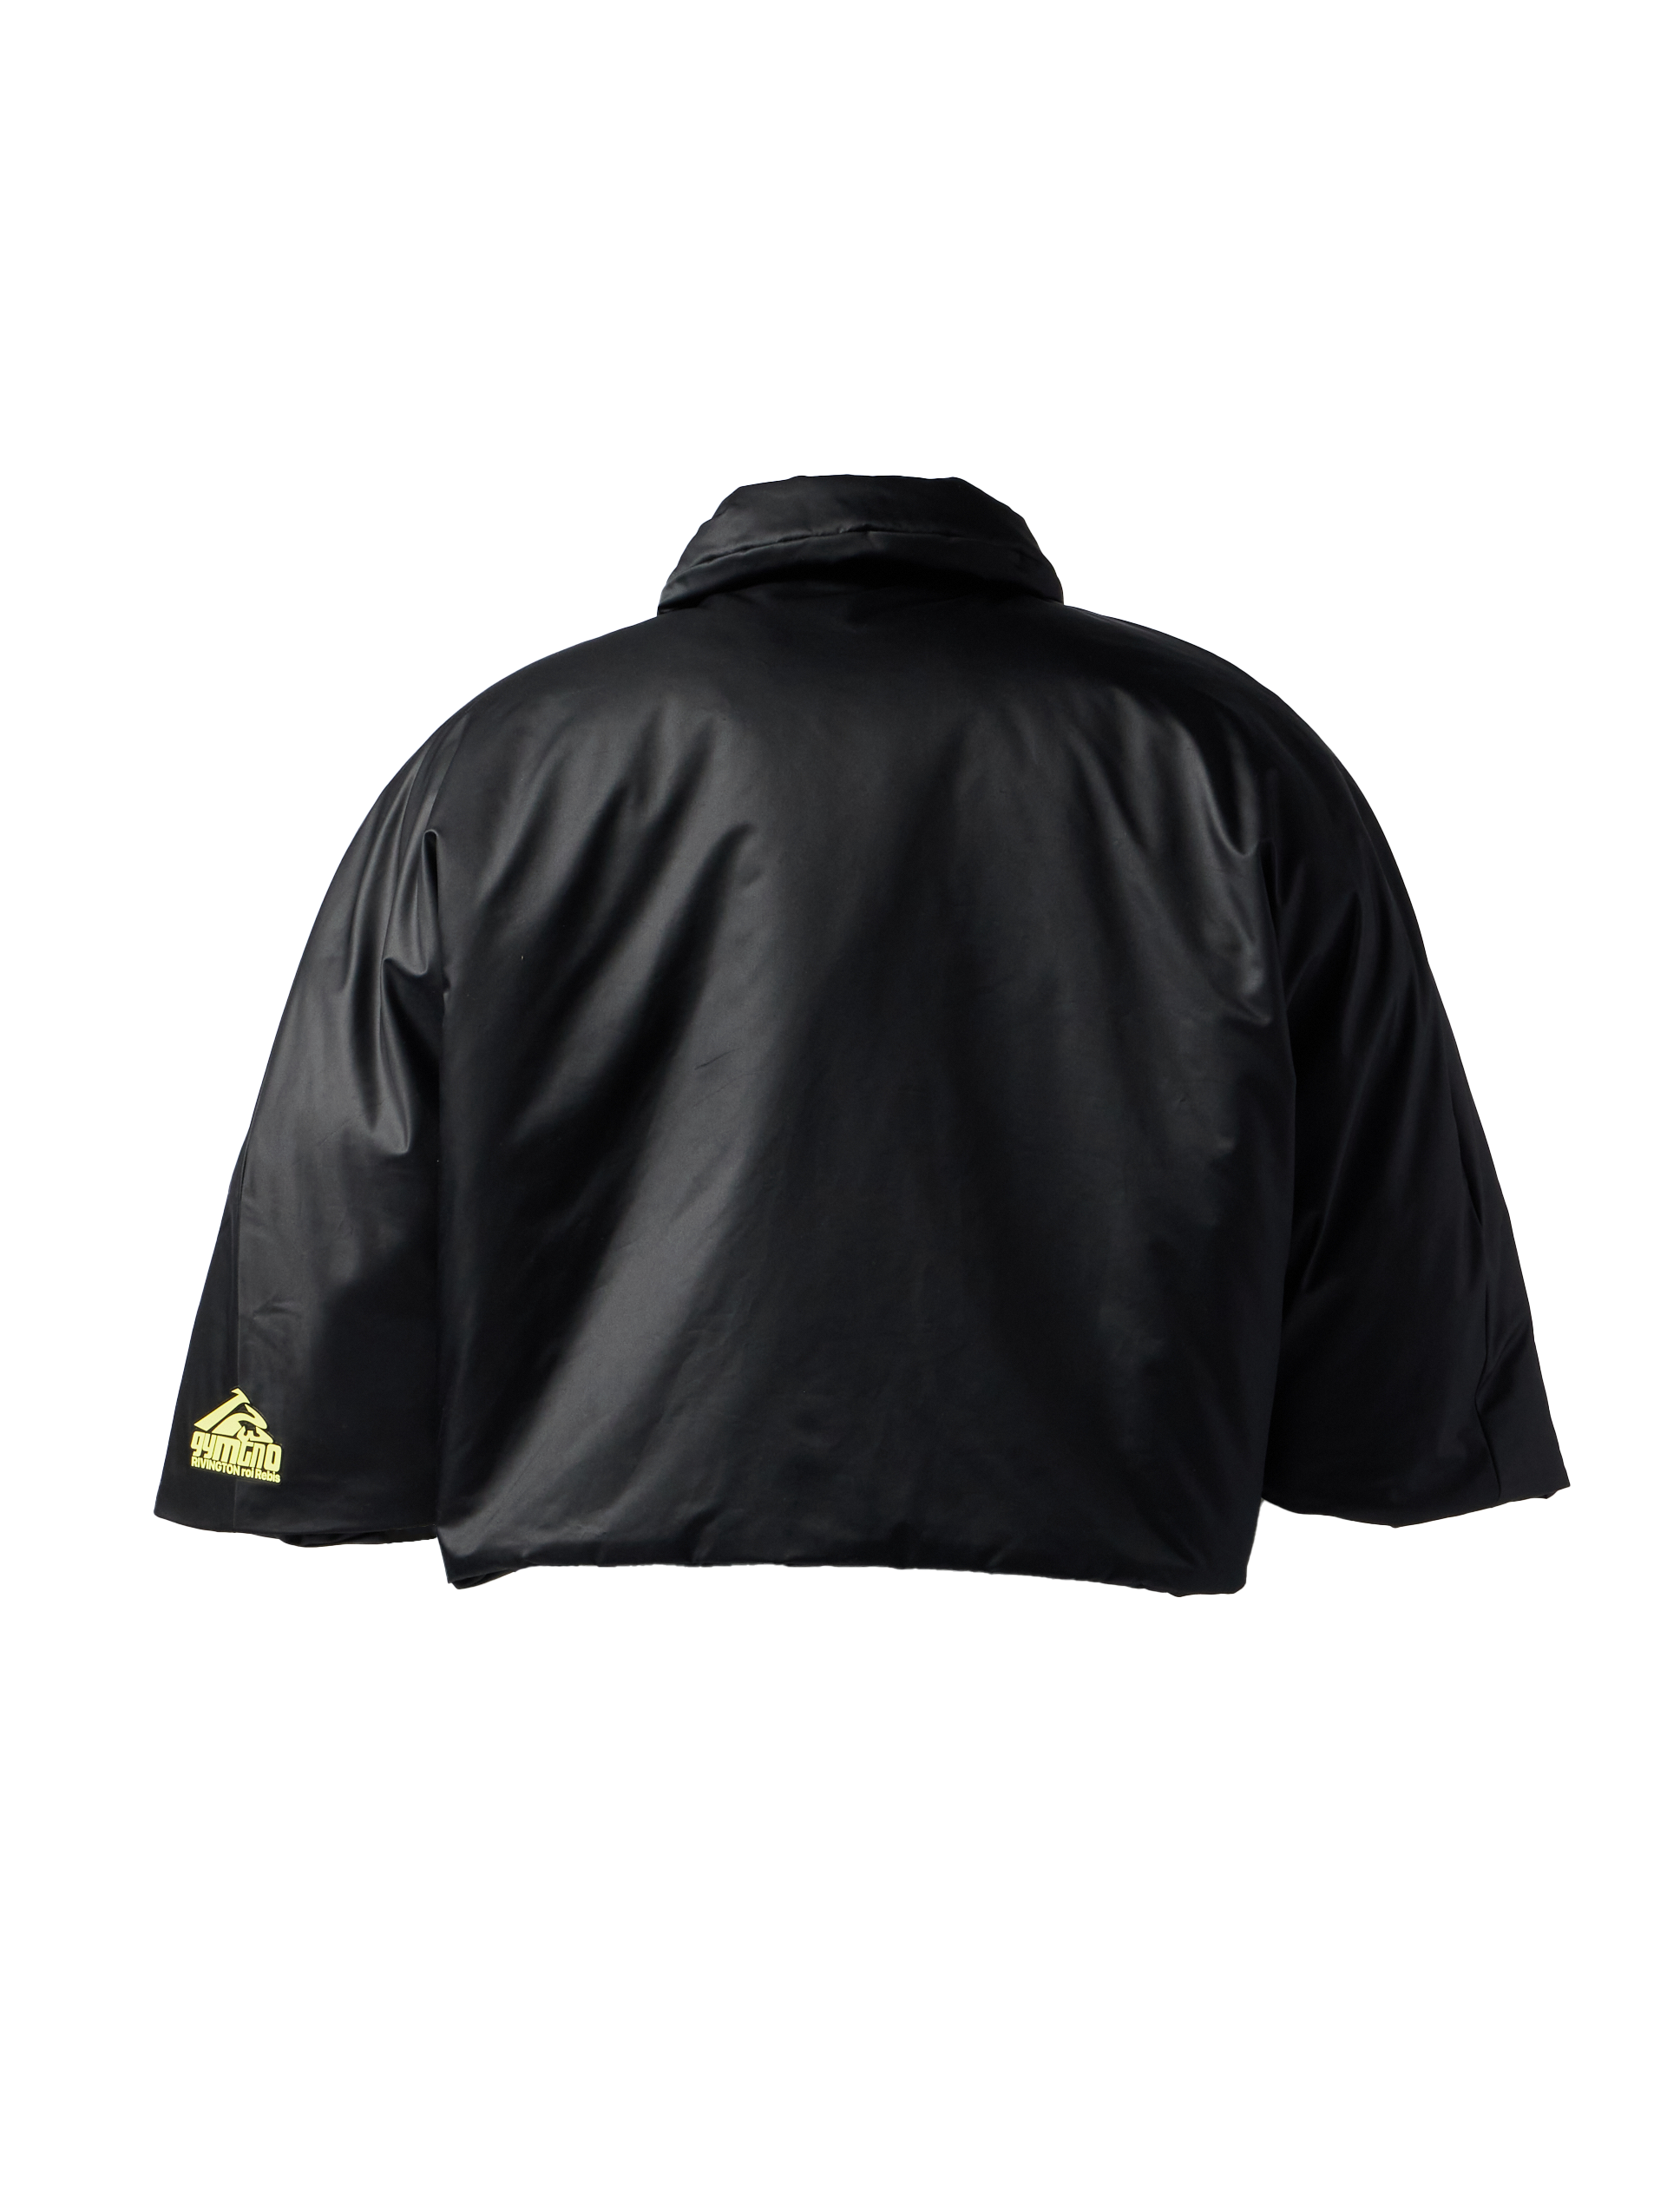 RRR123 - The Magi Jacket product image